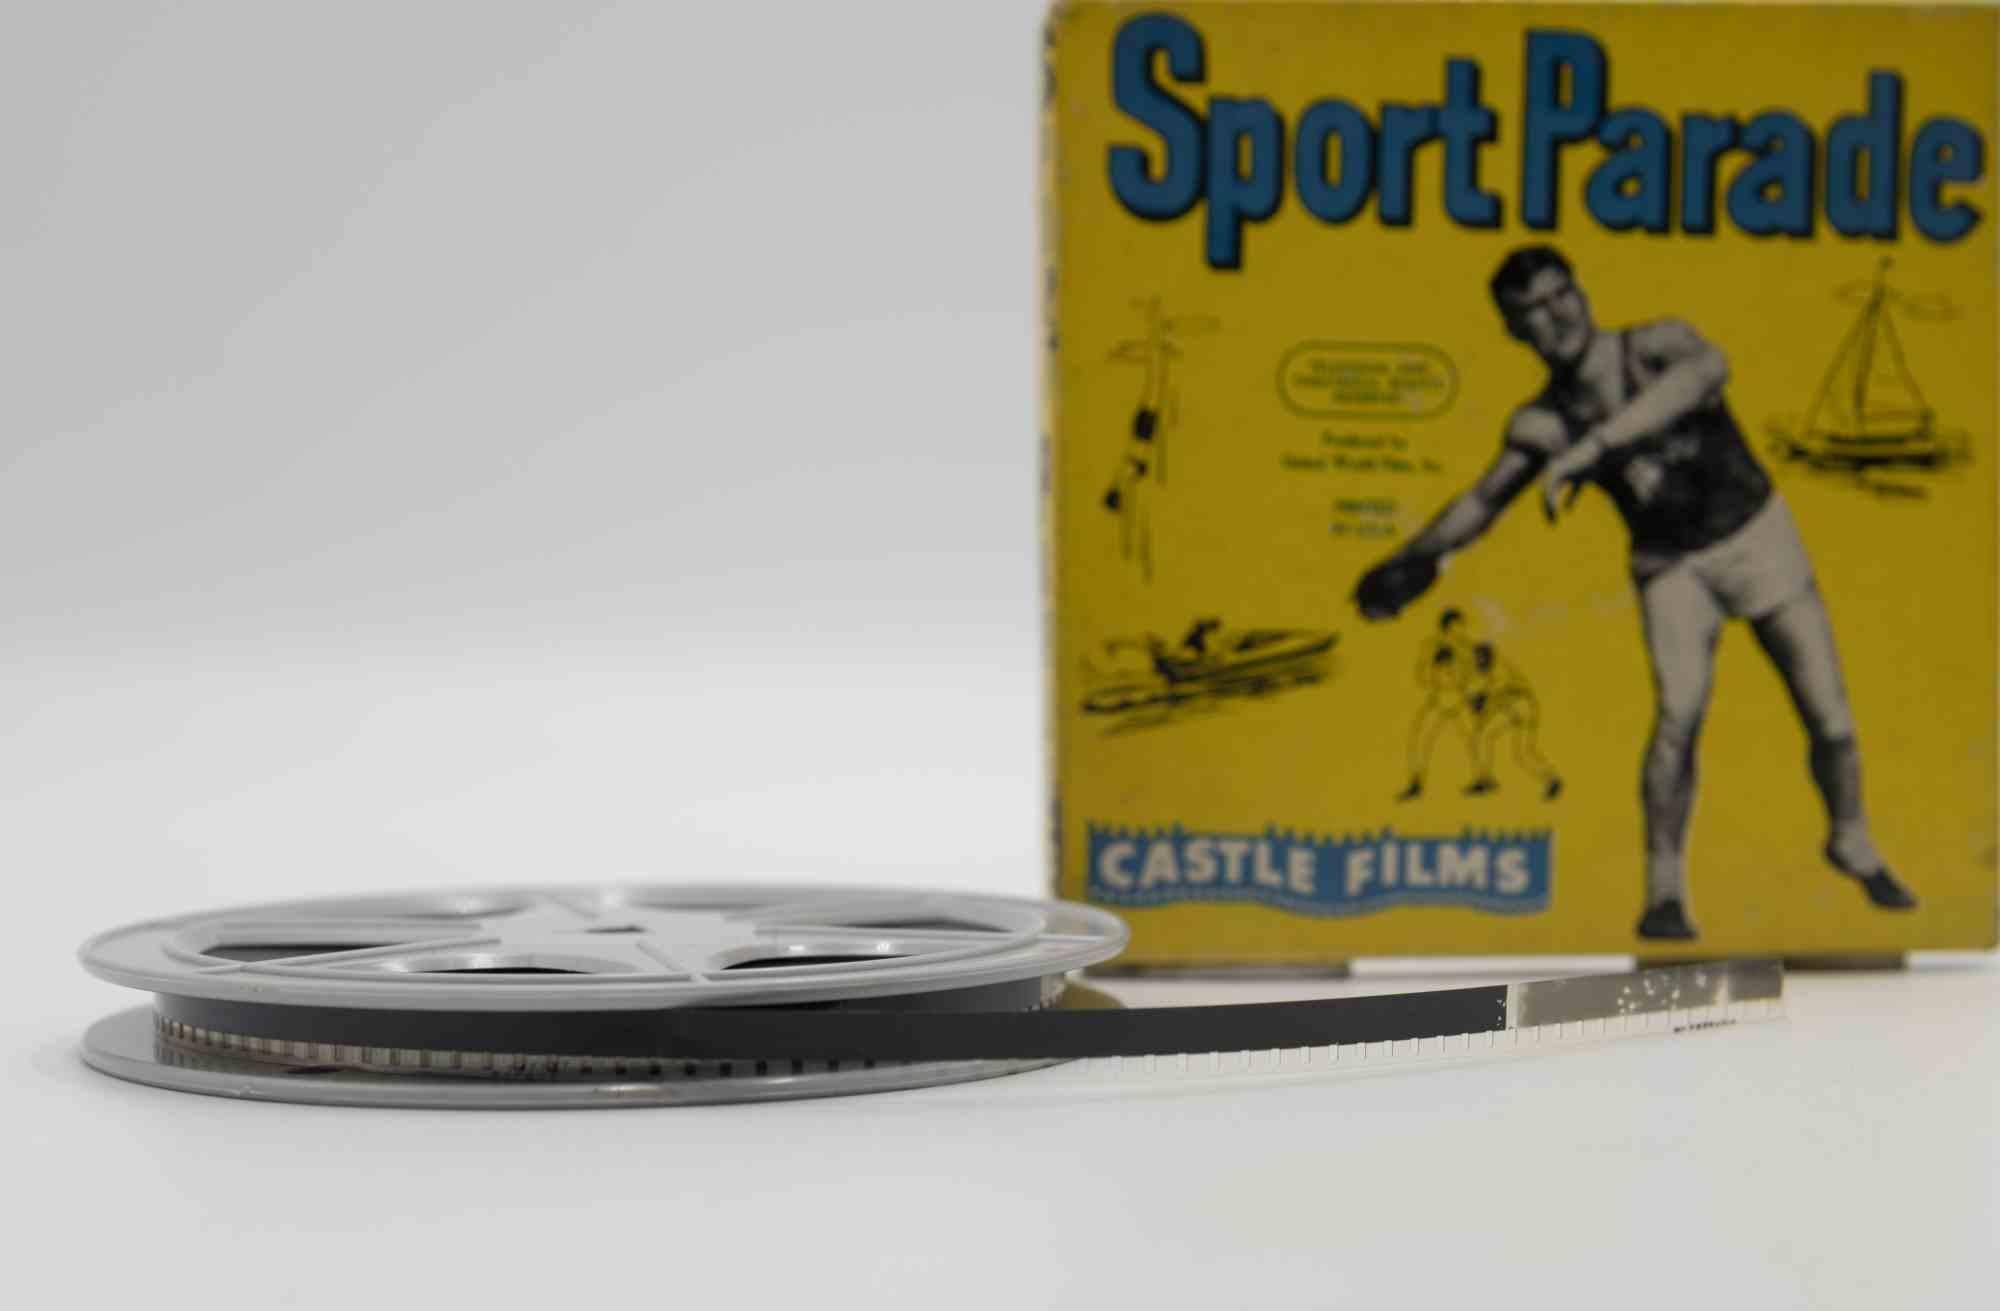 Der Sportparadenfilm ist ein Originalfilm aus den 1950er Jahren.

Sie enthält die Originalverpackung.

8mm oder 16mm.

Gute Bedingungen